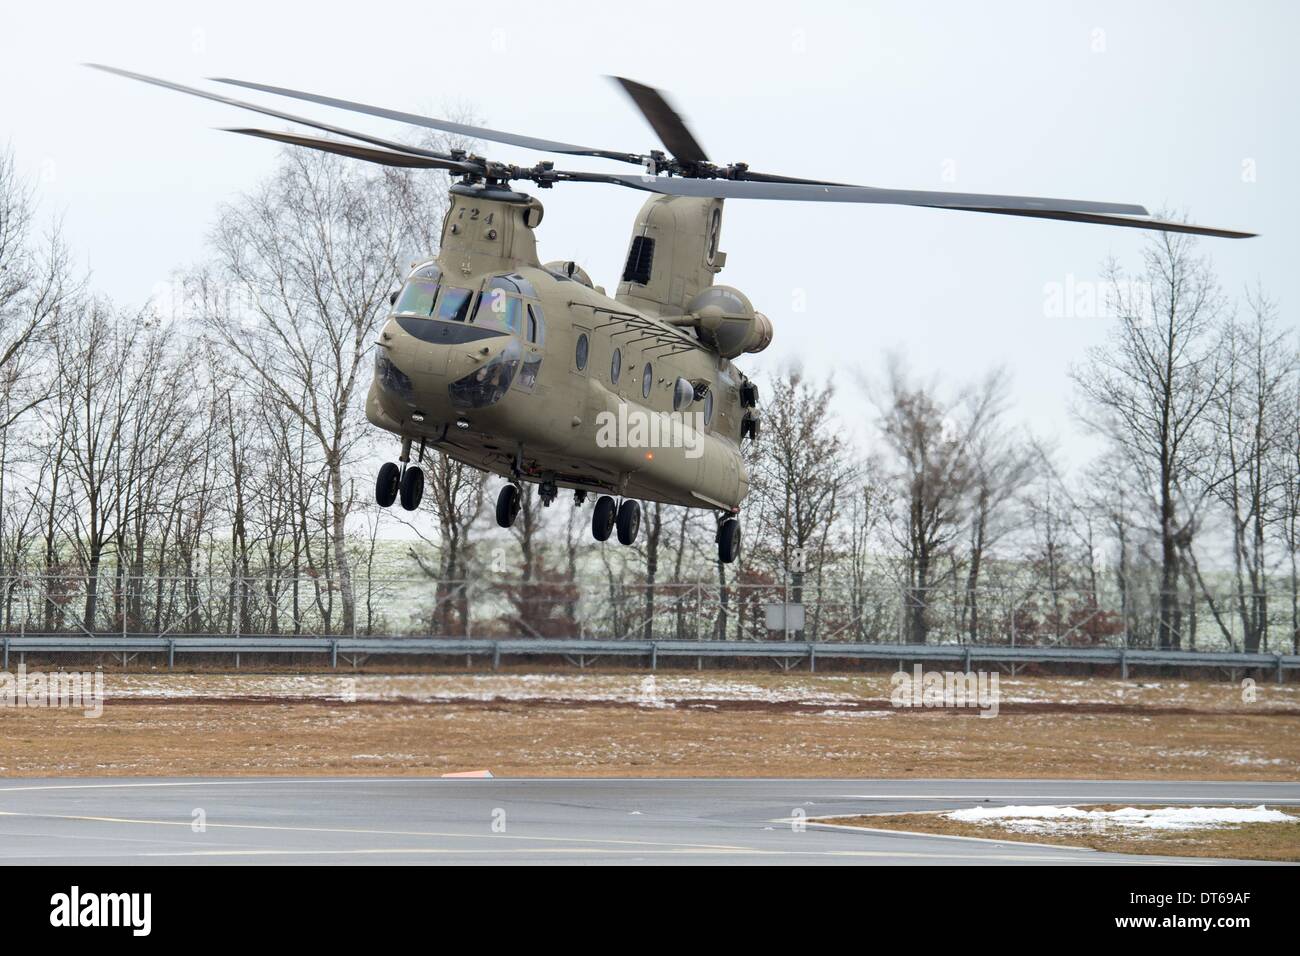 Grafenwöhr, Deutschland. 10. Februar 2014. Ein Boeing CH-47 Chinook-Hubschrauber nähert sich zur Landung auf dem Truppenübungsplatz in Grafenwöhr, Deutschland, 10. Februar 2014. Etwa 350 Soldaten stieg von etwa 330 Meter über dem Meeresspiegel von einem Militärhubschrauber. Die Ausbildung bereitet der 173rd Airborne Brigade für weitere Operationen. Das Gerät wurde bereits in den Kriegsgebieten im Irak und in Afghanistan eingesetzt. Foto: ARMIN WEIGEL/Dpa/Alamy Live-Nachrichten Stockfoto